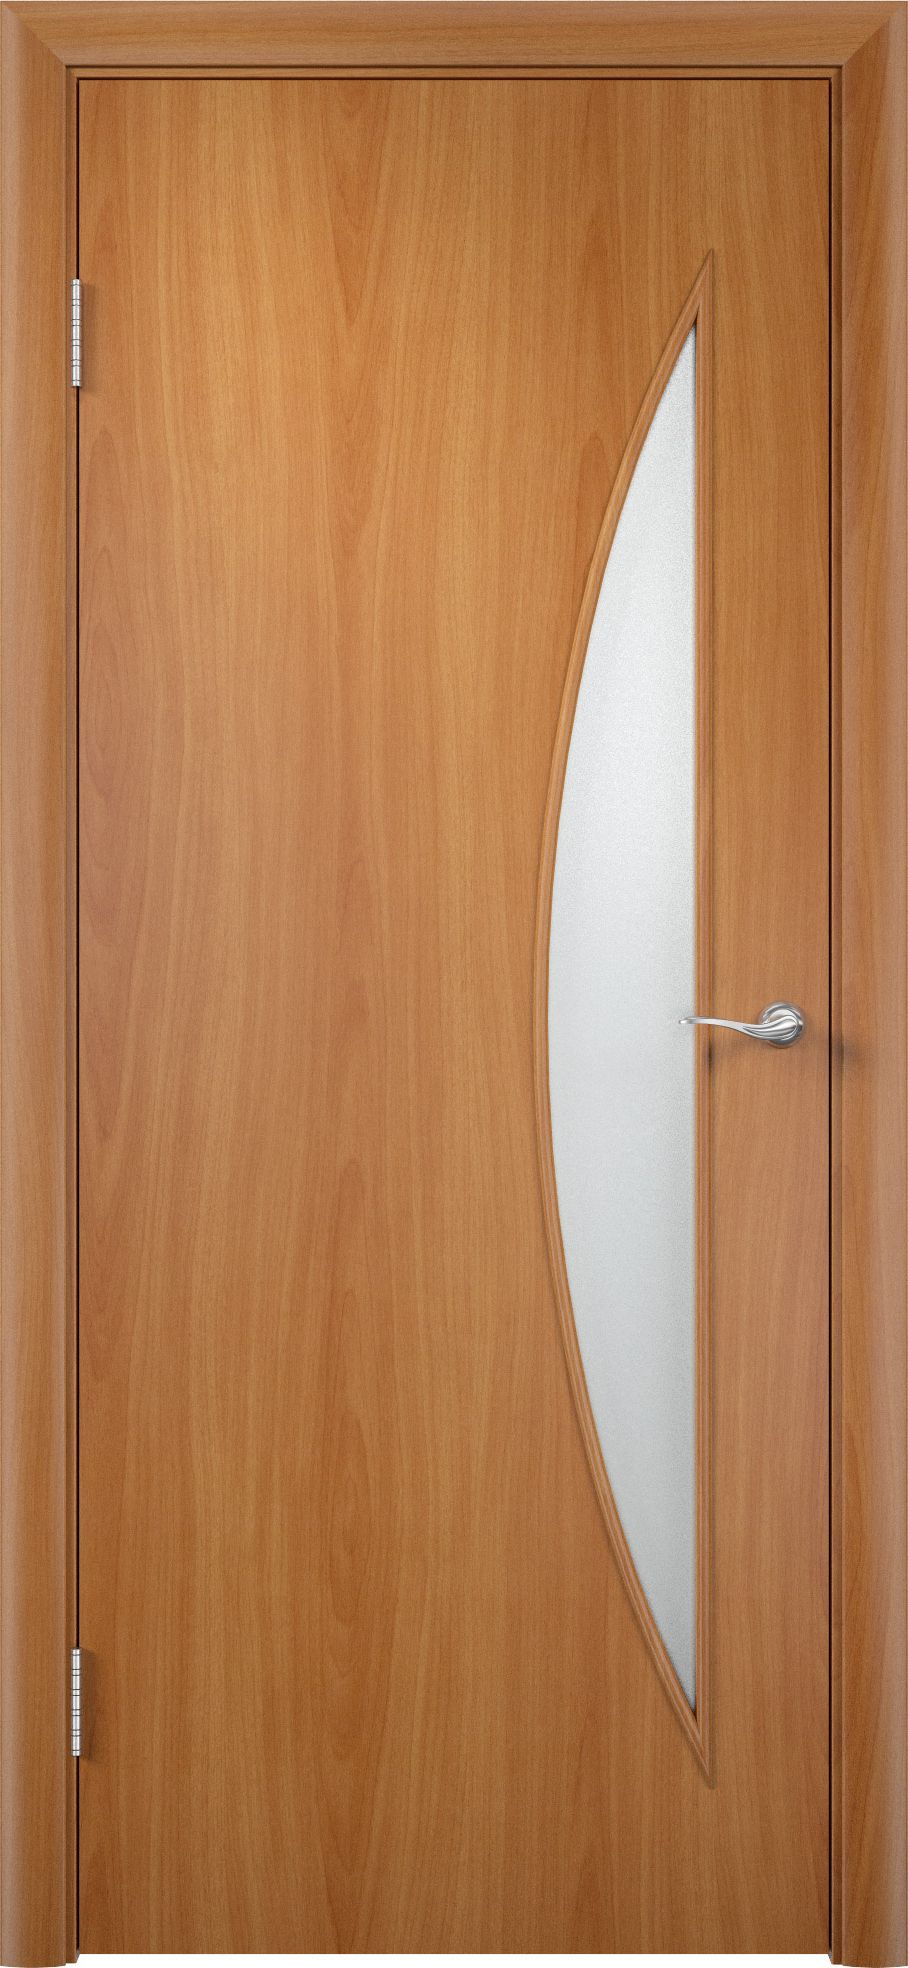 MDF wooden interior door